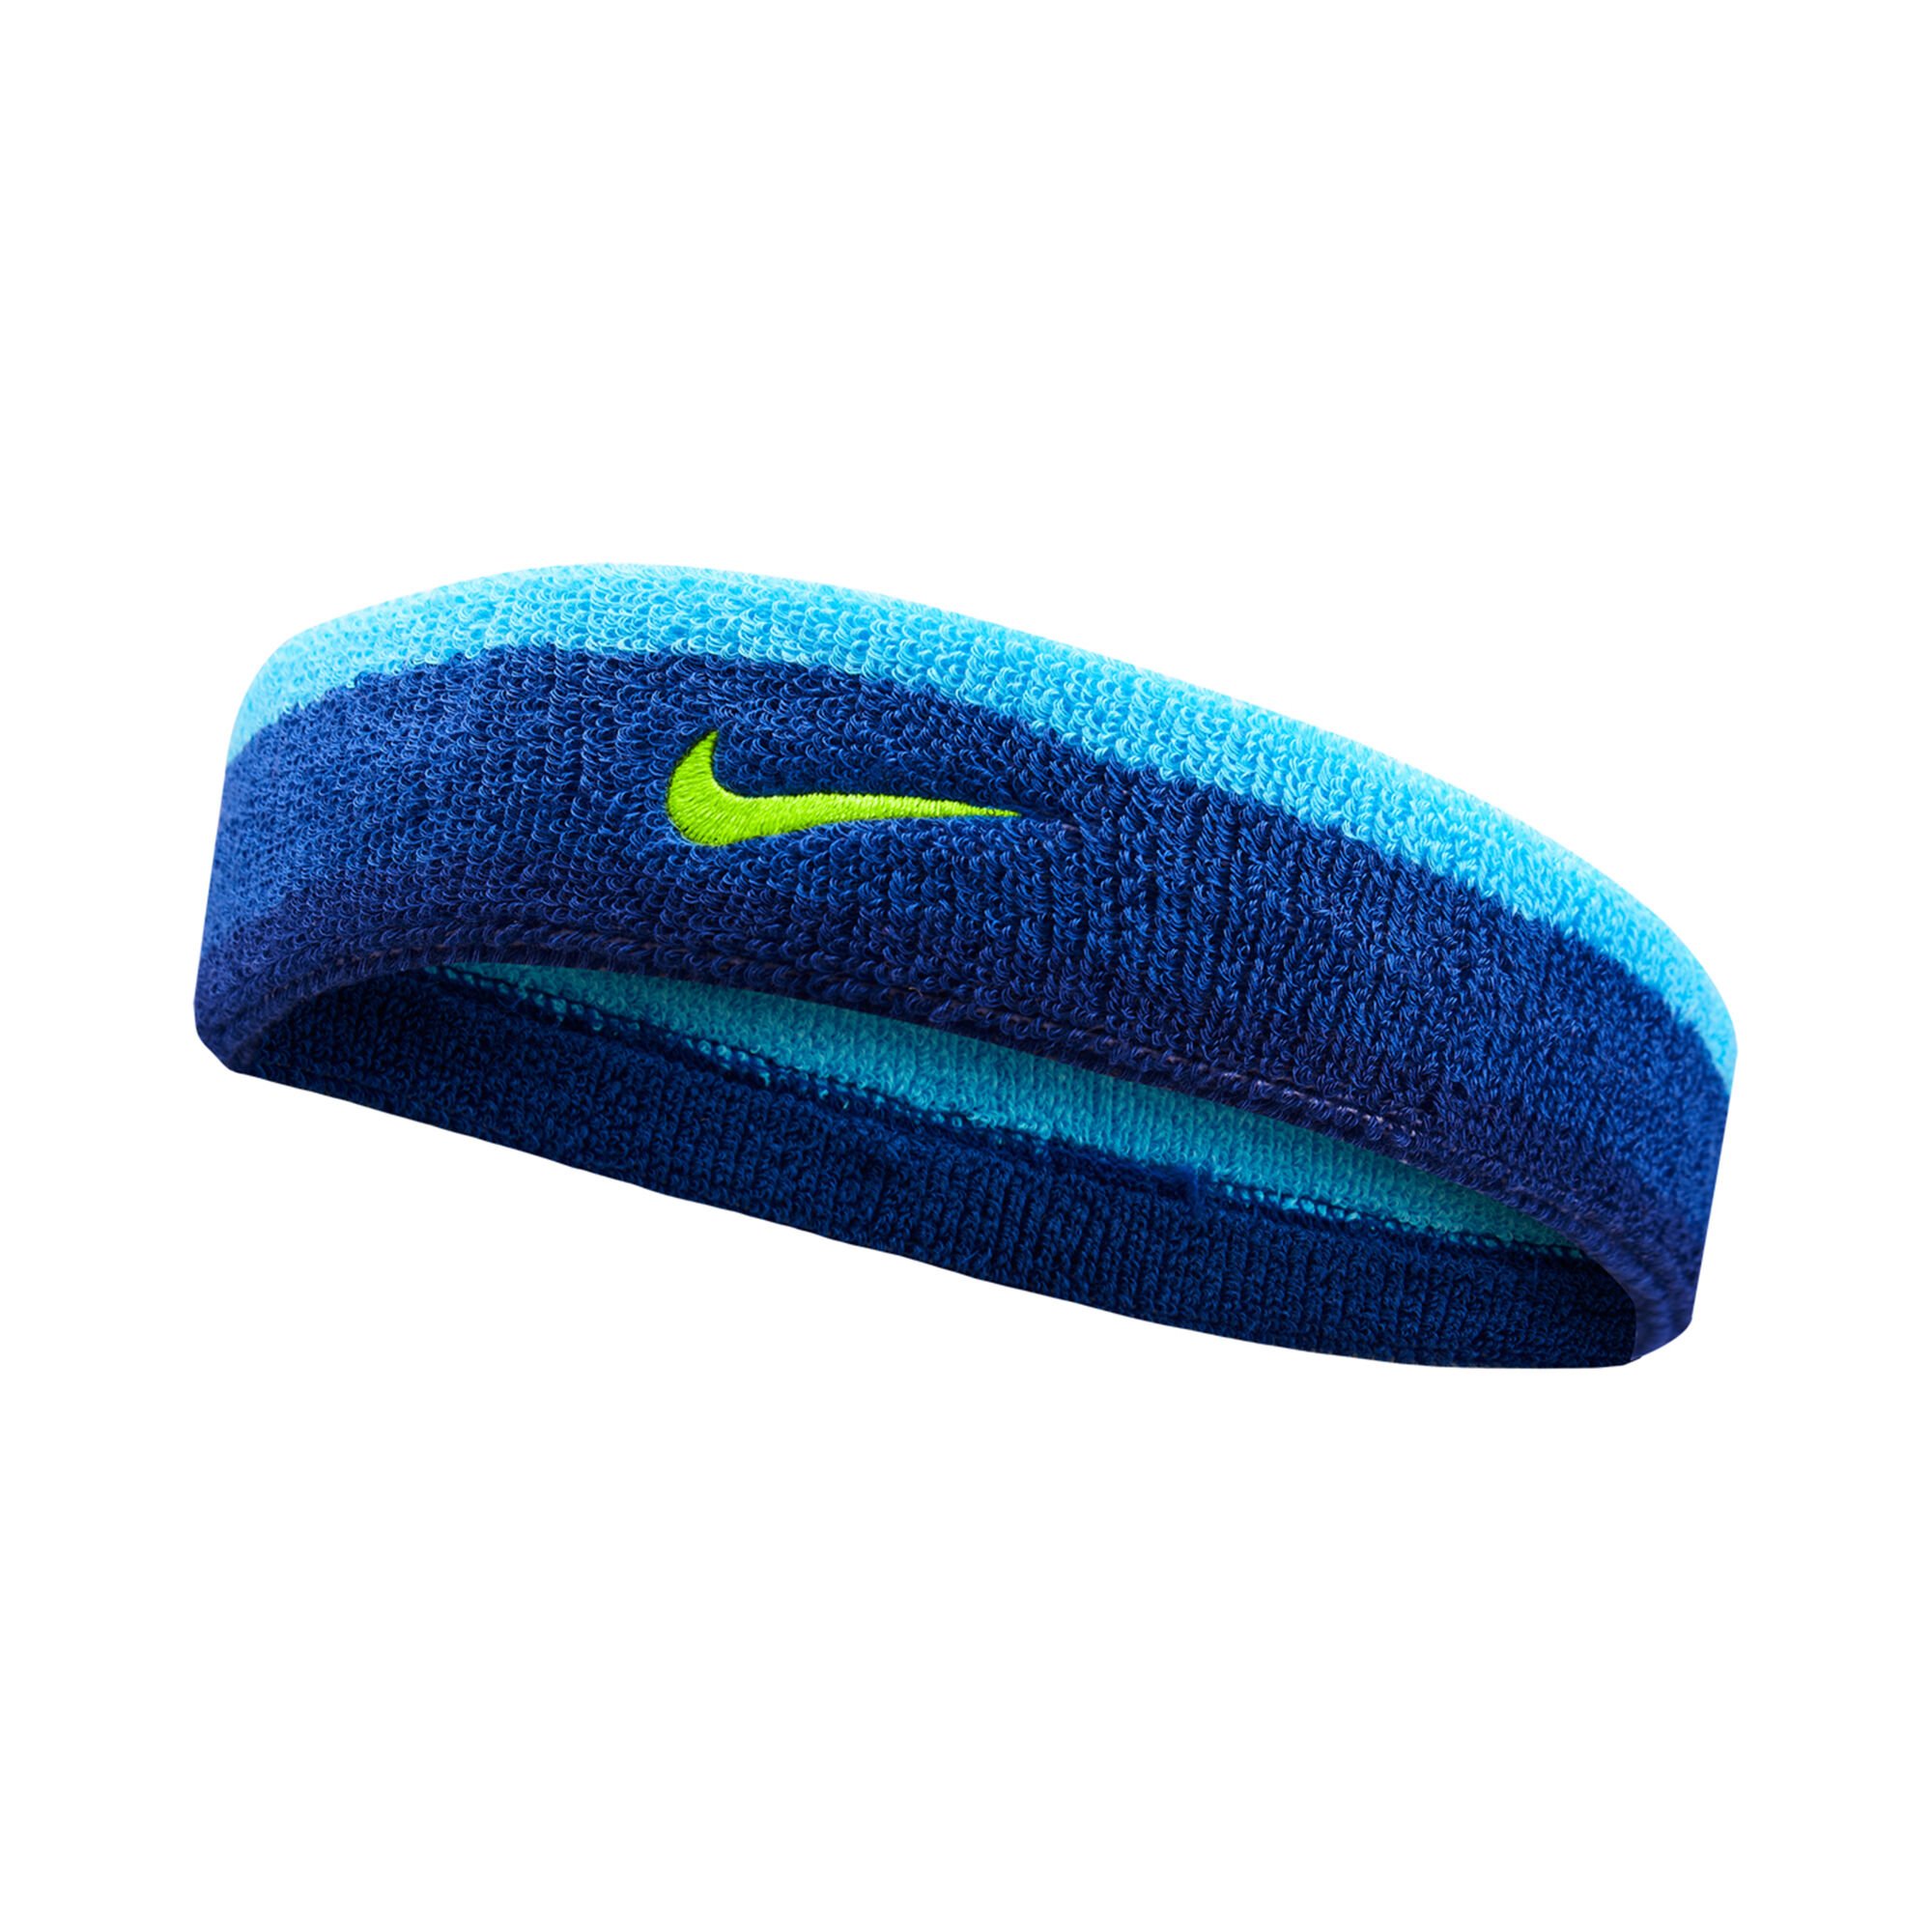 ankel Sprout Stirre Nike Swoosh Pandebånd - Blå, Grøn køb online | Tennis-Point